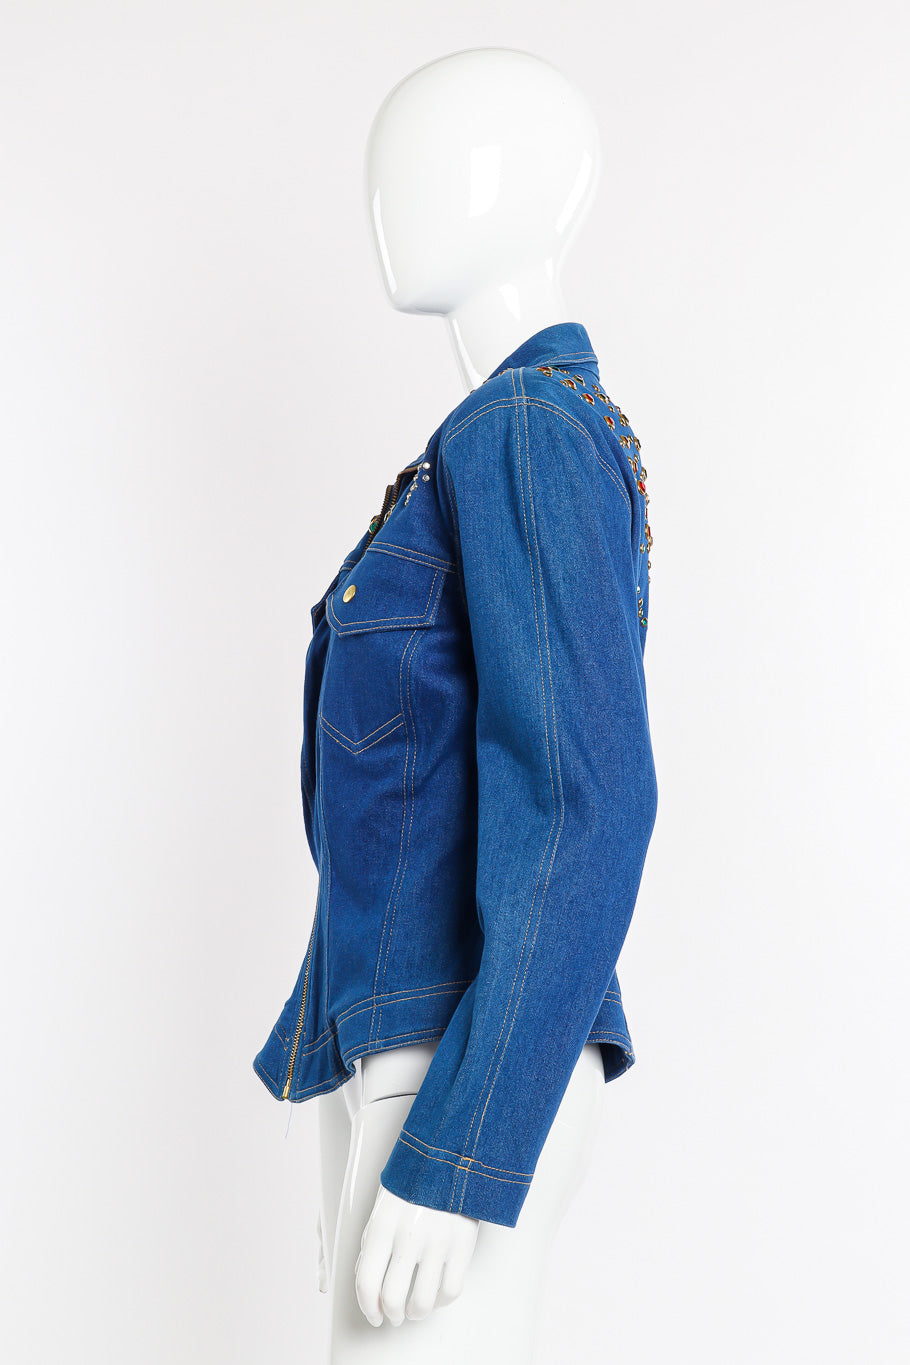 Vintage Lillie Rubin Crystal Studded Denim Jacket side view on mannequin @Recessla